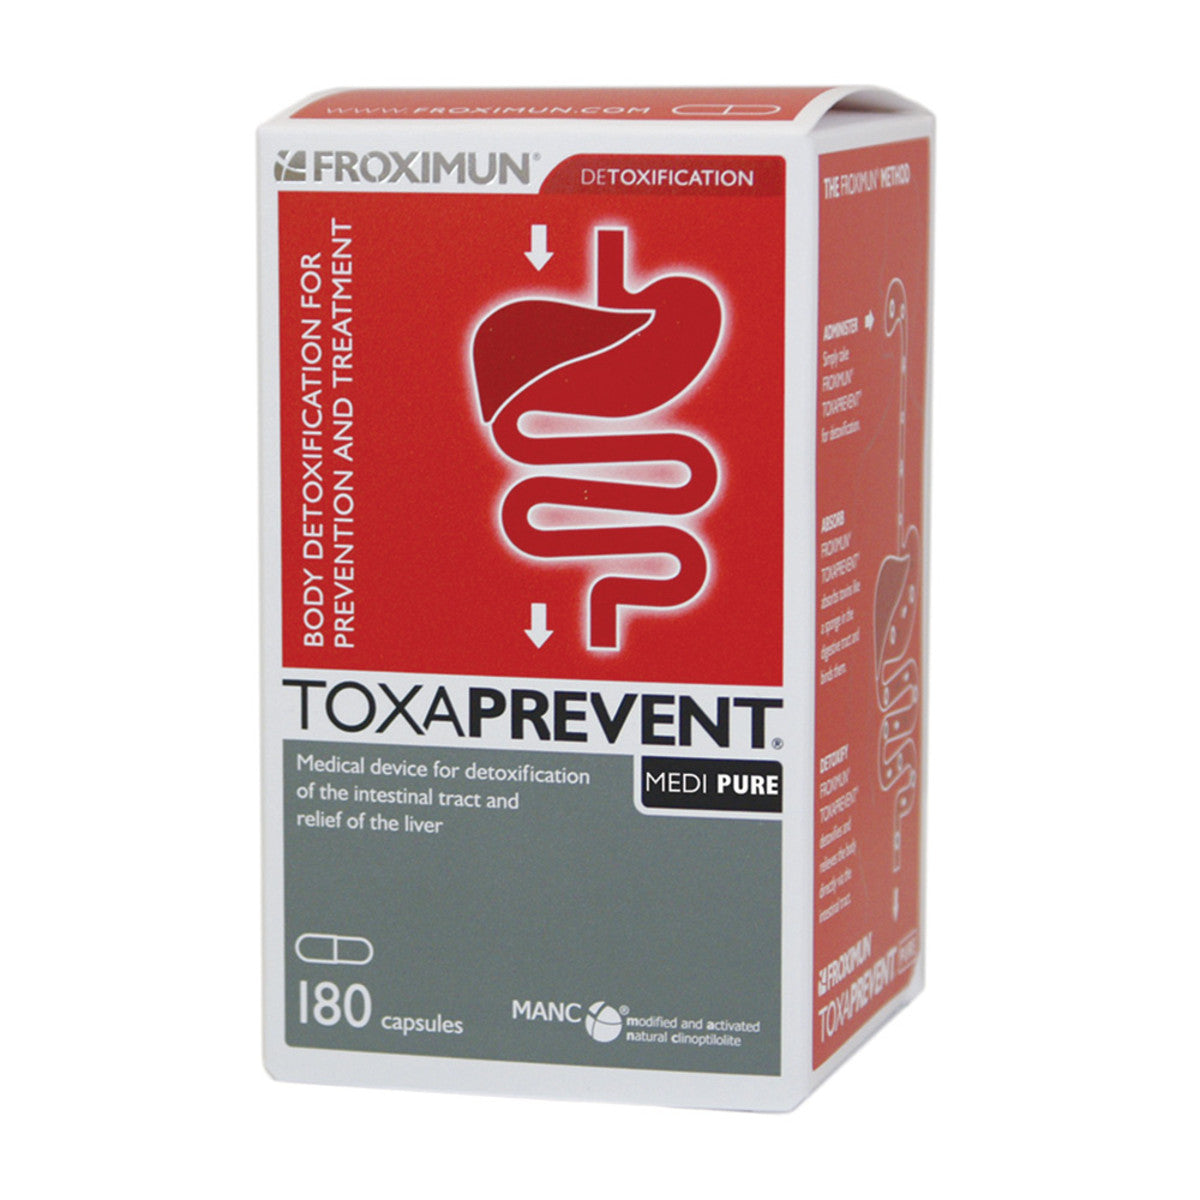 Bio-Practica - Toxaprevent Medi Pure